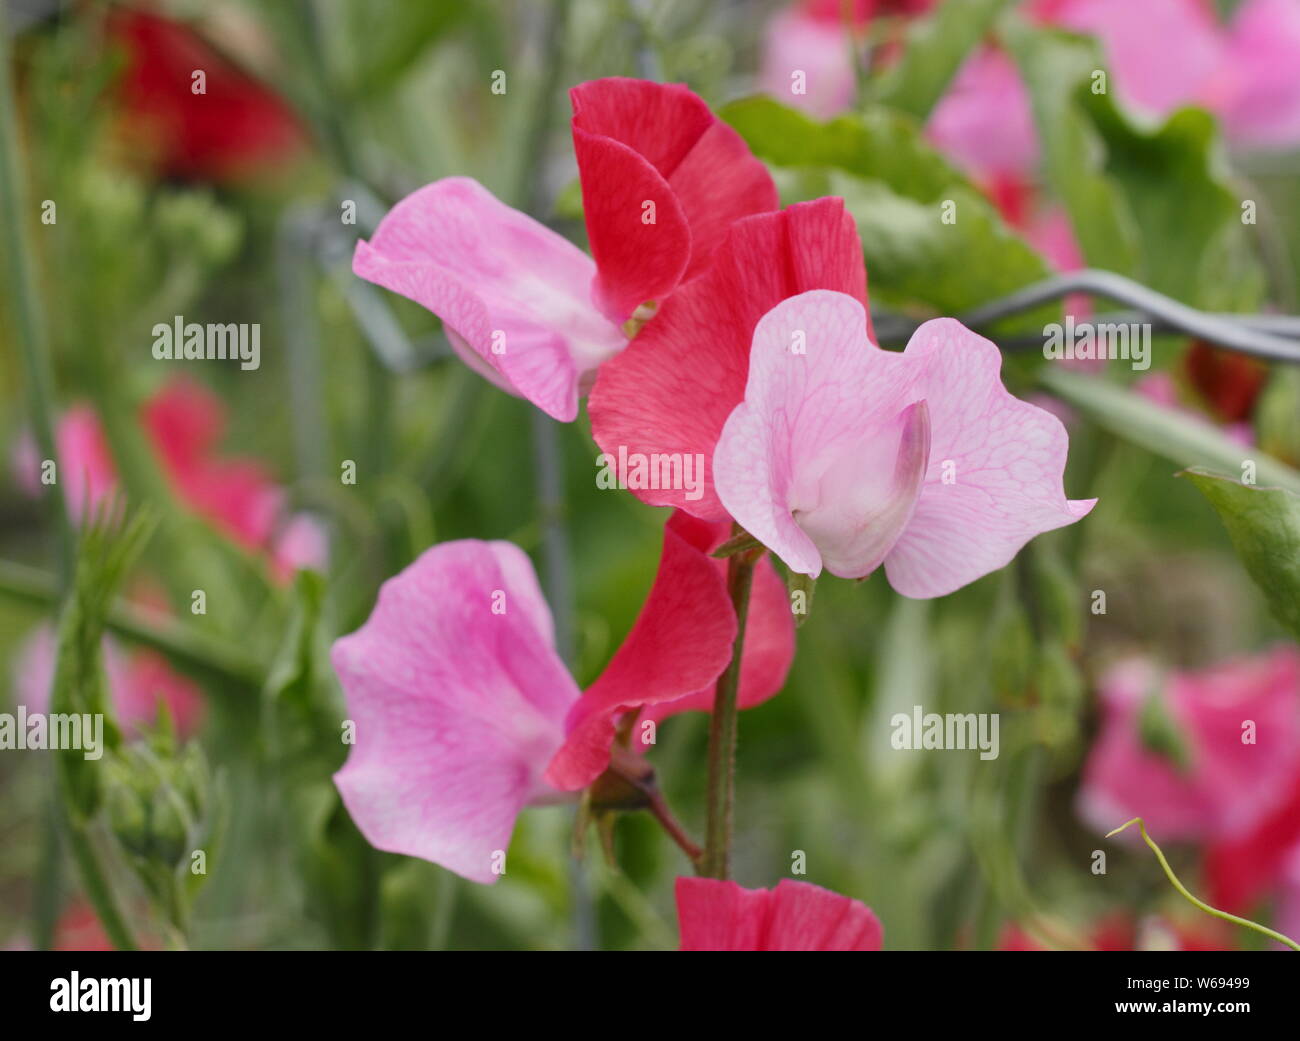 Lathyrus odoratus 'Duo' Saumon bicolore pois de floraison dans un chalet jardin - Juillet. Banque D'Images